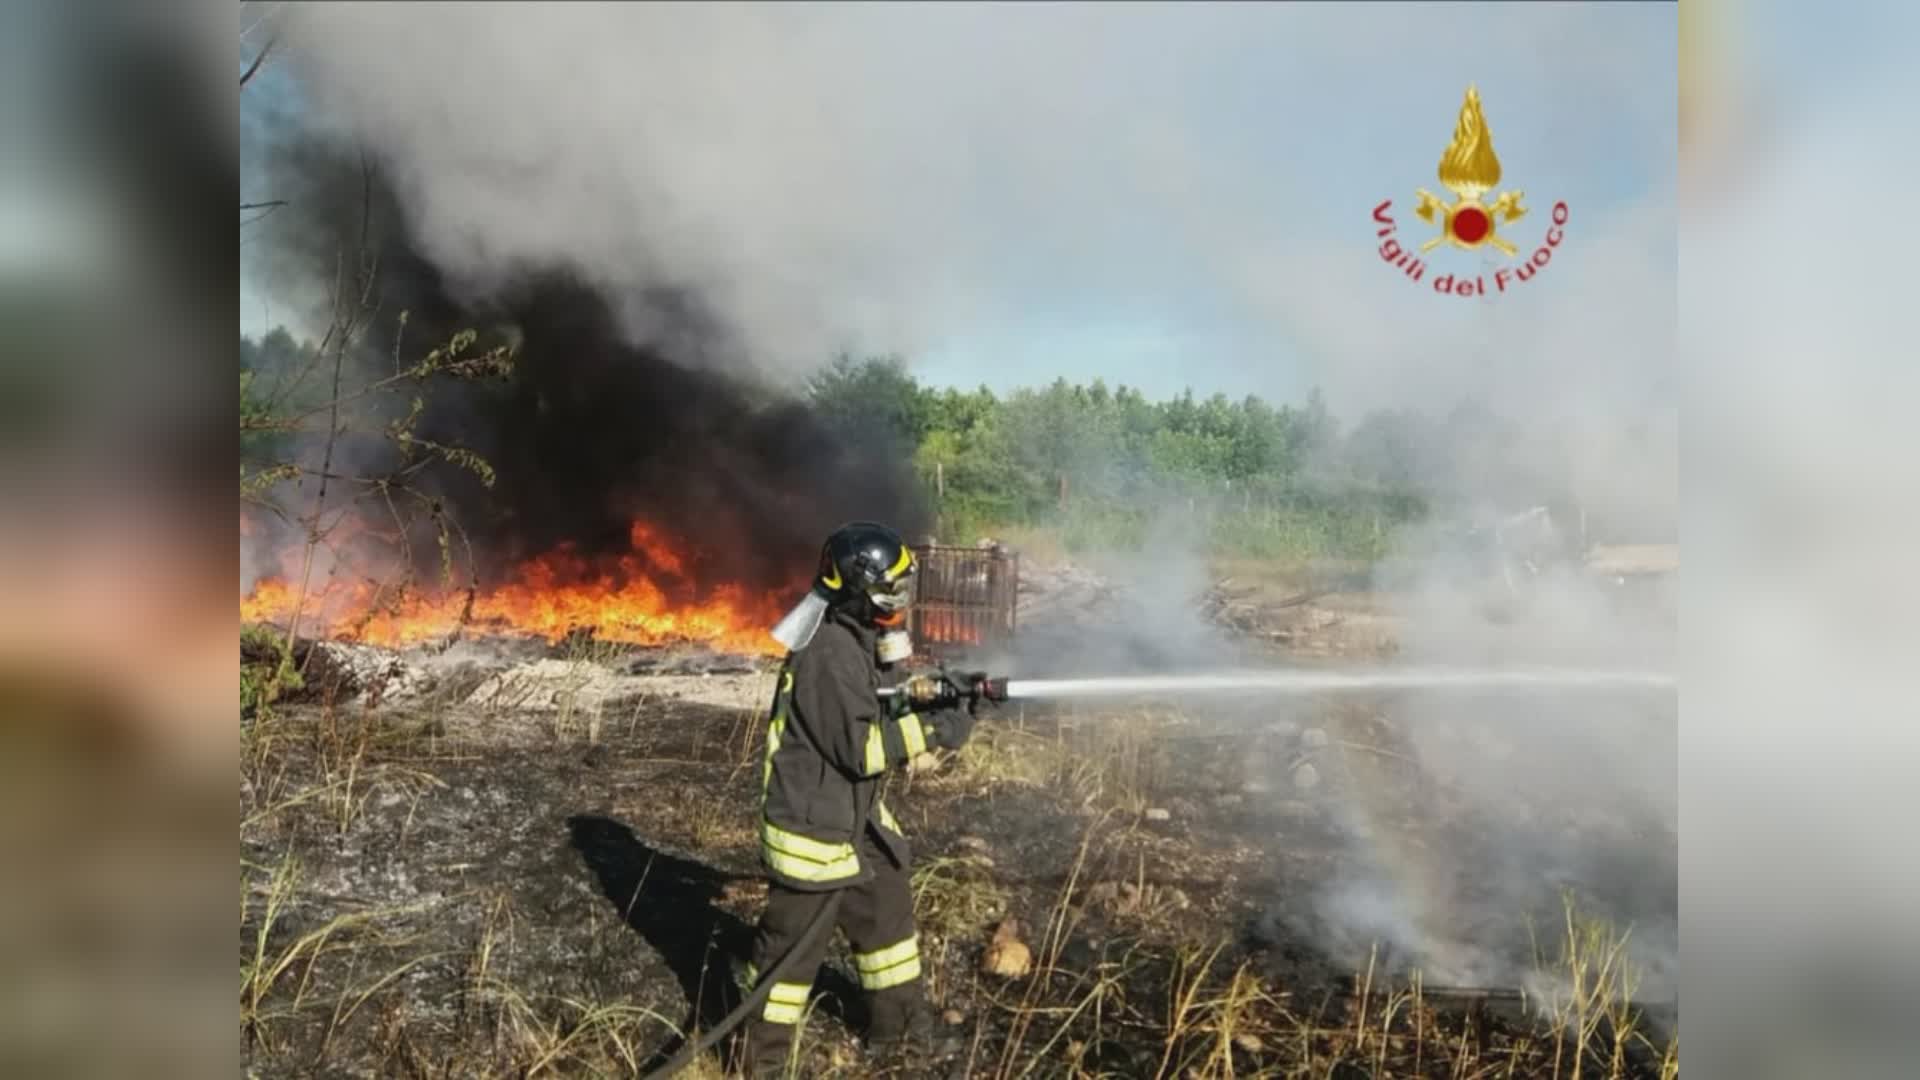 Incendi, Vvf al lavoro per diversi roghi in tutta la regione